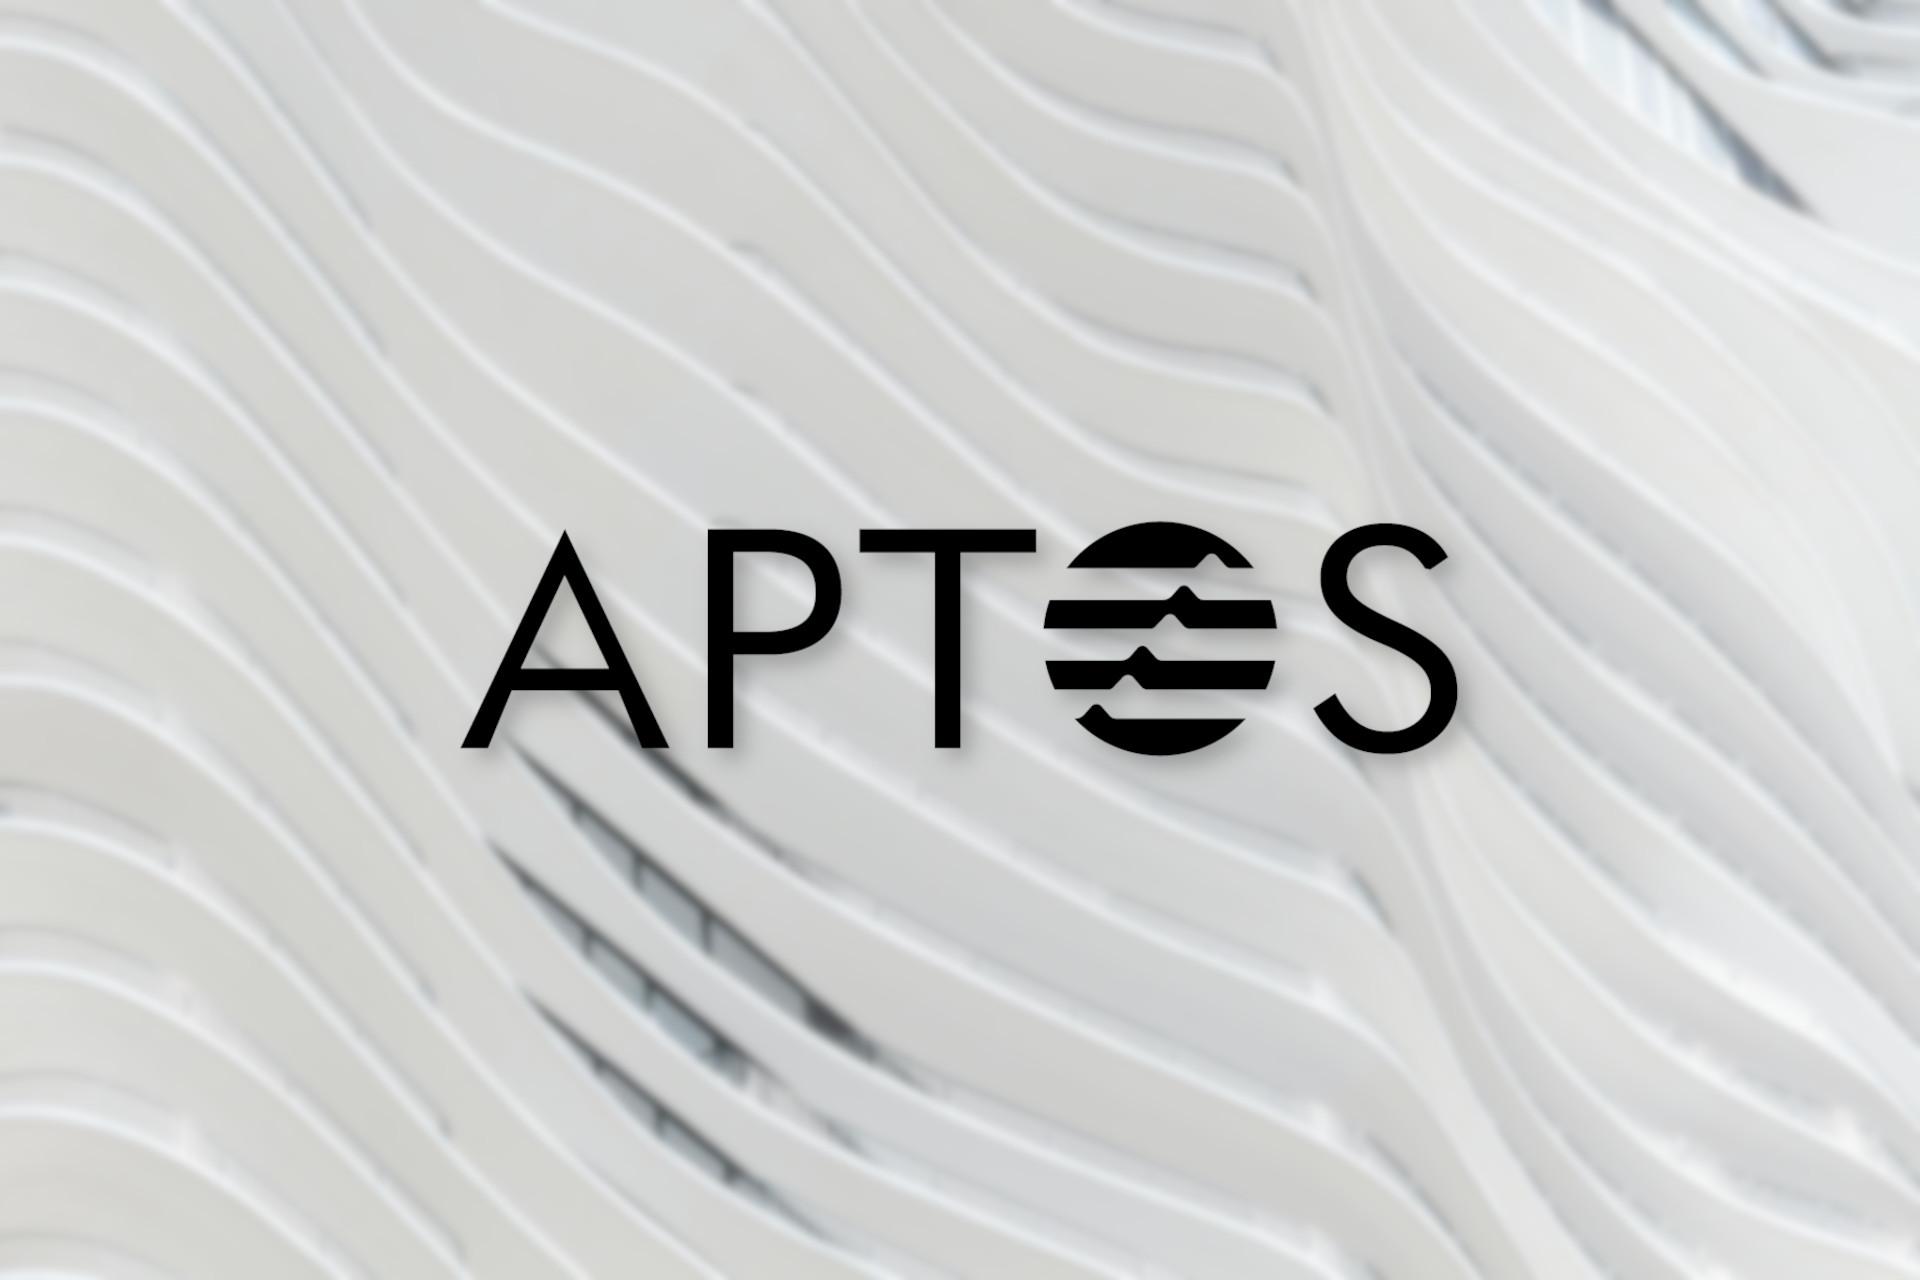 Aptos (APT) logo cover image